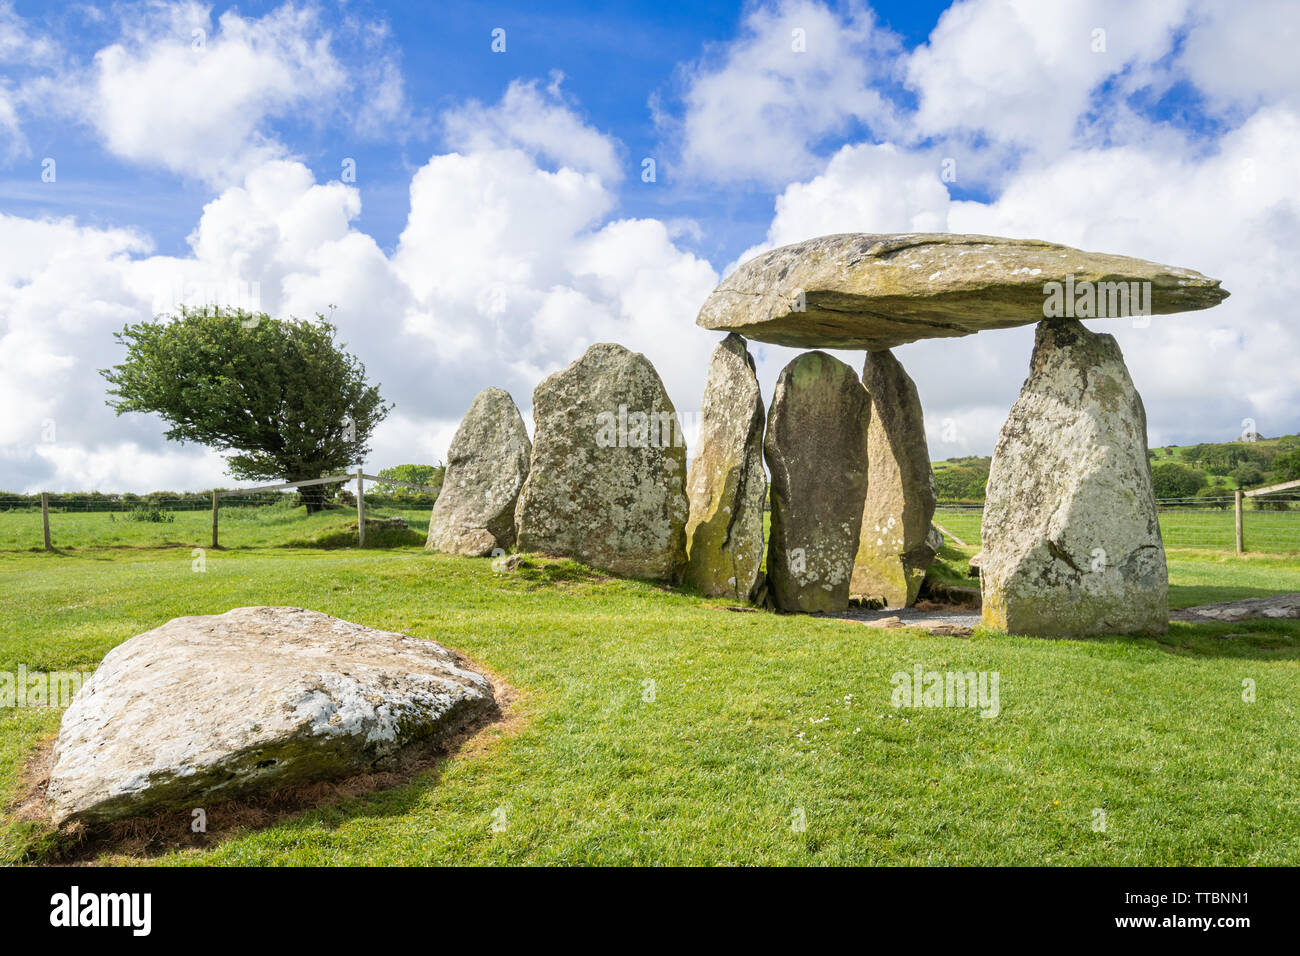 Pentre Ifan chambre funéraire néolithique ou dolmen (une grande pierre plate sur le dessus de plusieurs pierres debout) à Pembrokeshire, Pays de Galles, Royaume-Uni Banque D'Images